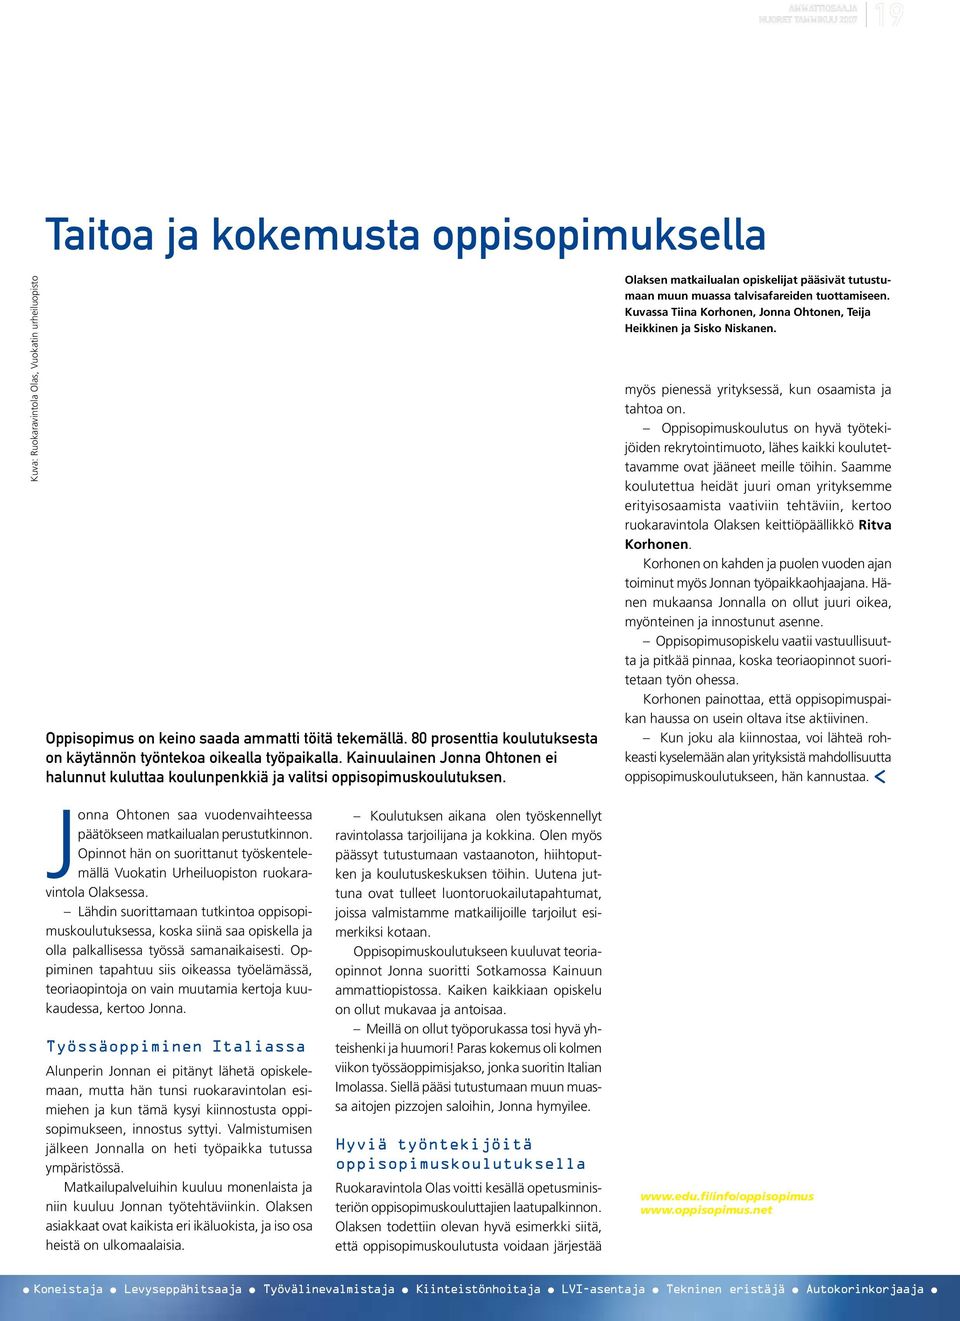 Olaksen matkailualan opiskelijat pääsivät tutustumaan muun muassa talvisafareiden tuottamiseen. Kuvassa Tiina Korhonen, Jonna Ohtonen, Teija Heikkinen ja Sisko Niskanen.